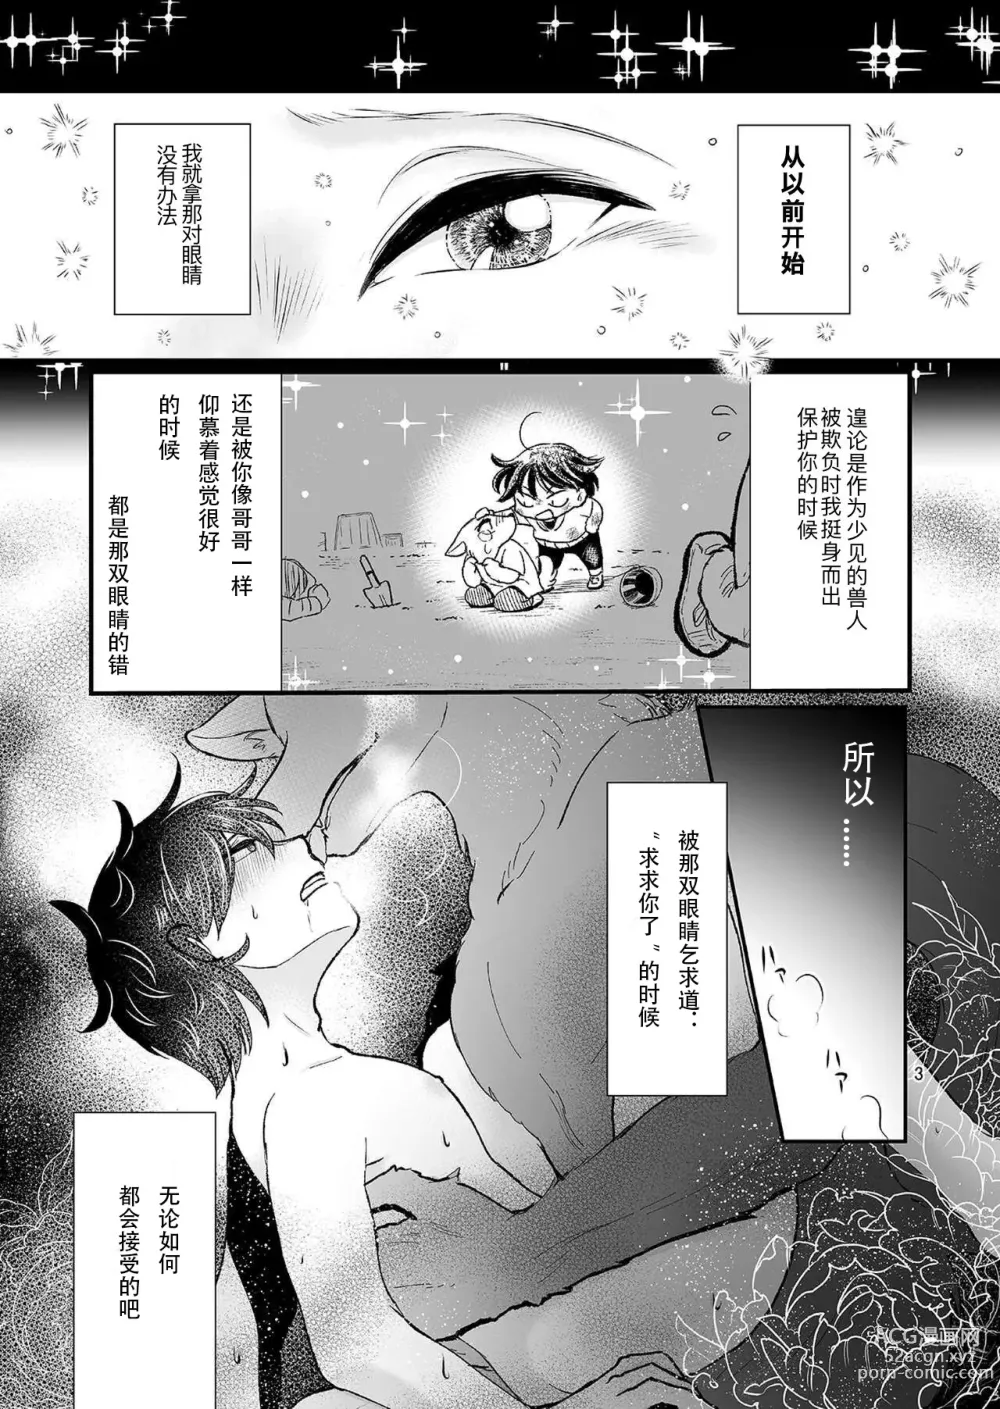 Page 2 of doujinshi Dai-chan Onegai